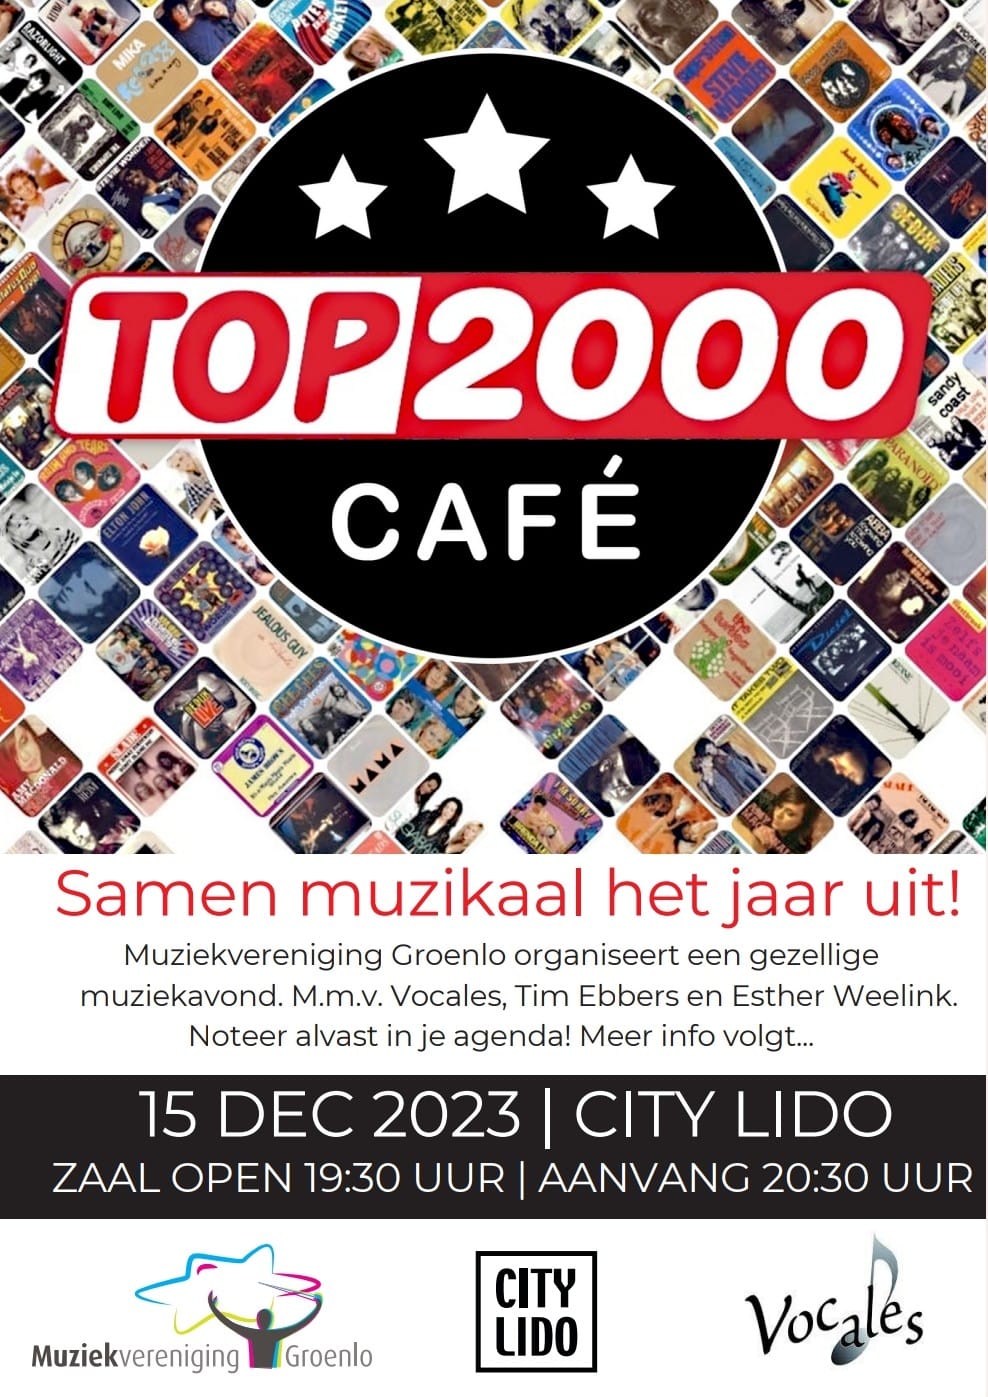 Top2000 café